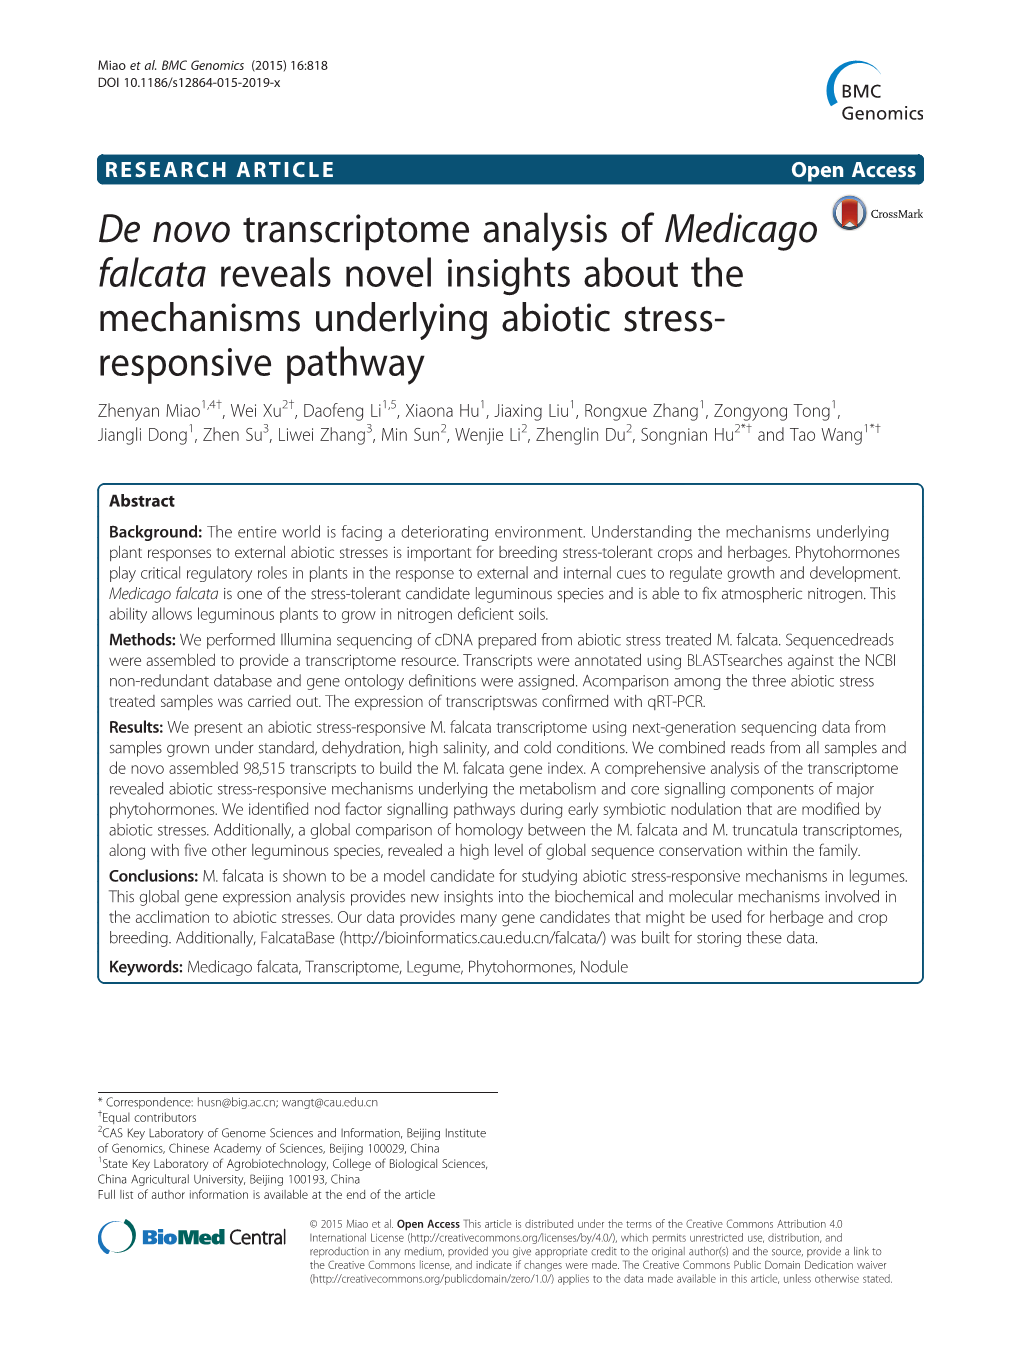 De Novo Transcriptome Analysis of Medicago Falcata